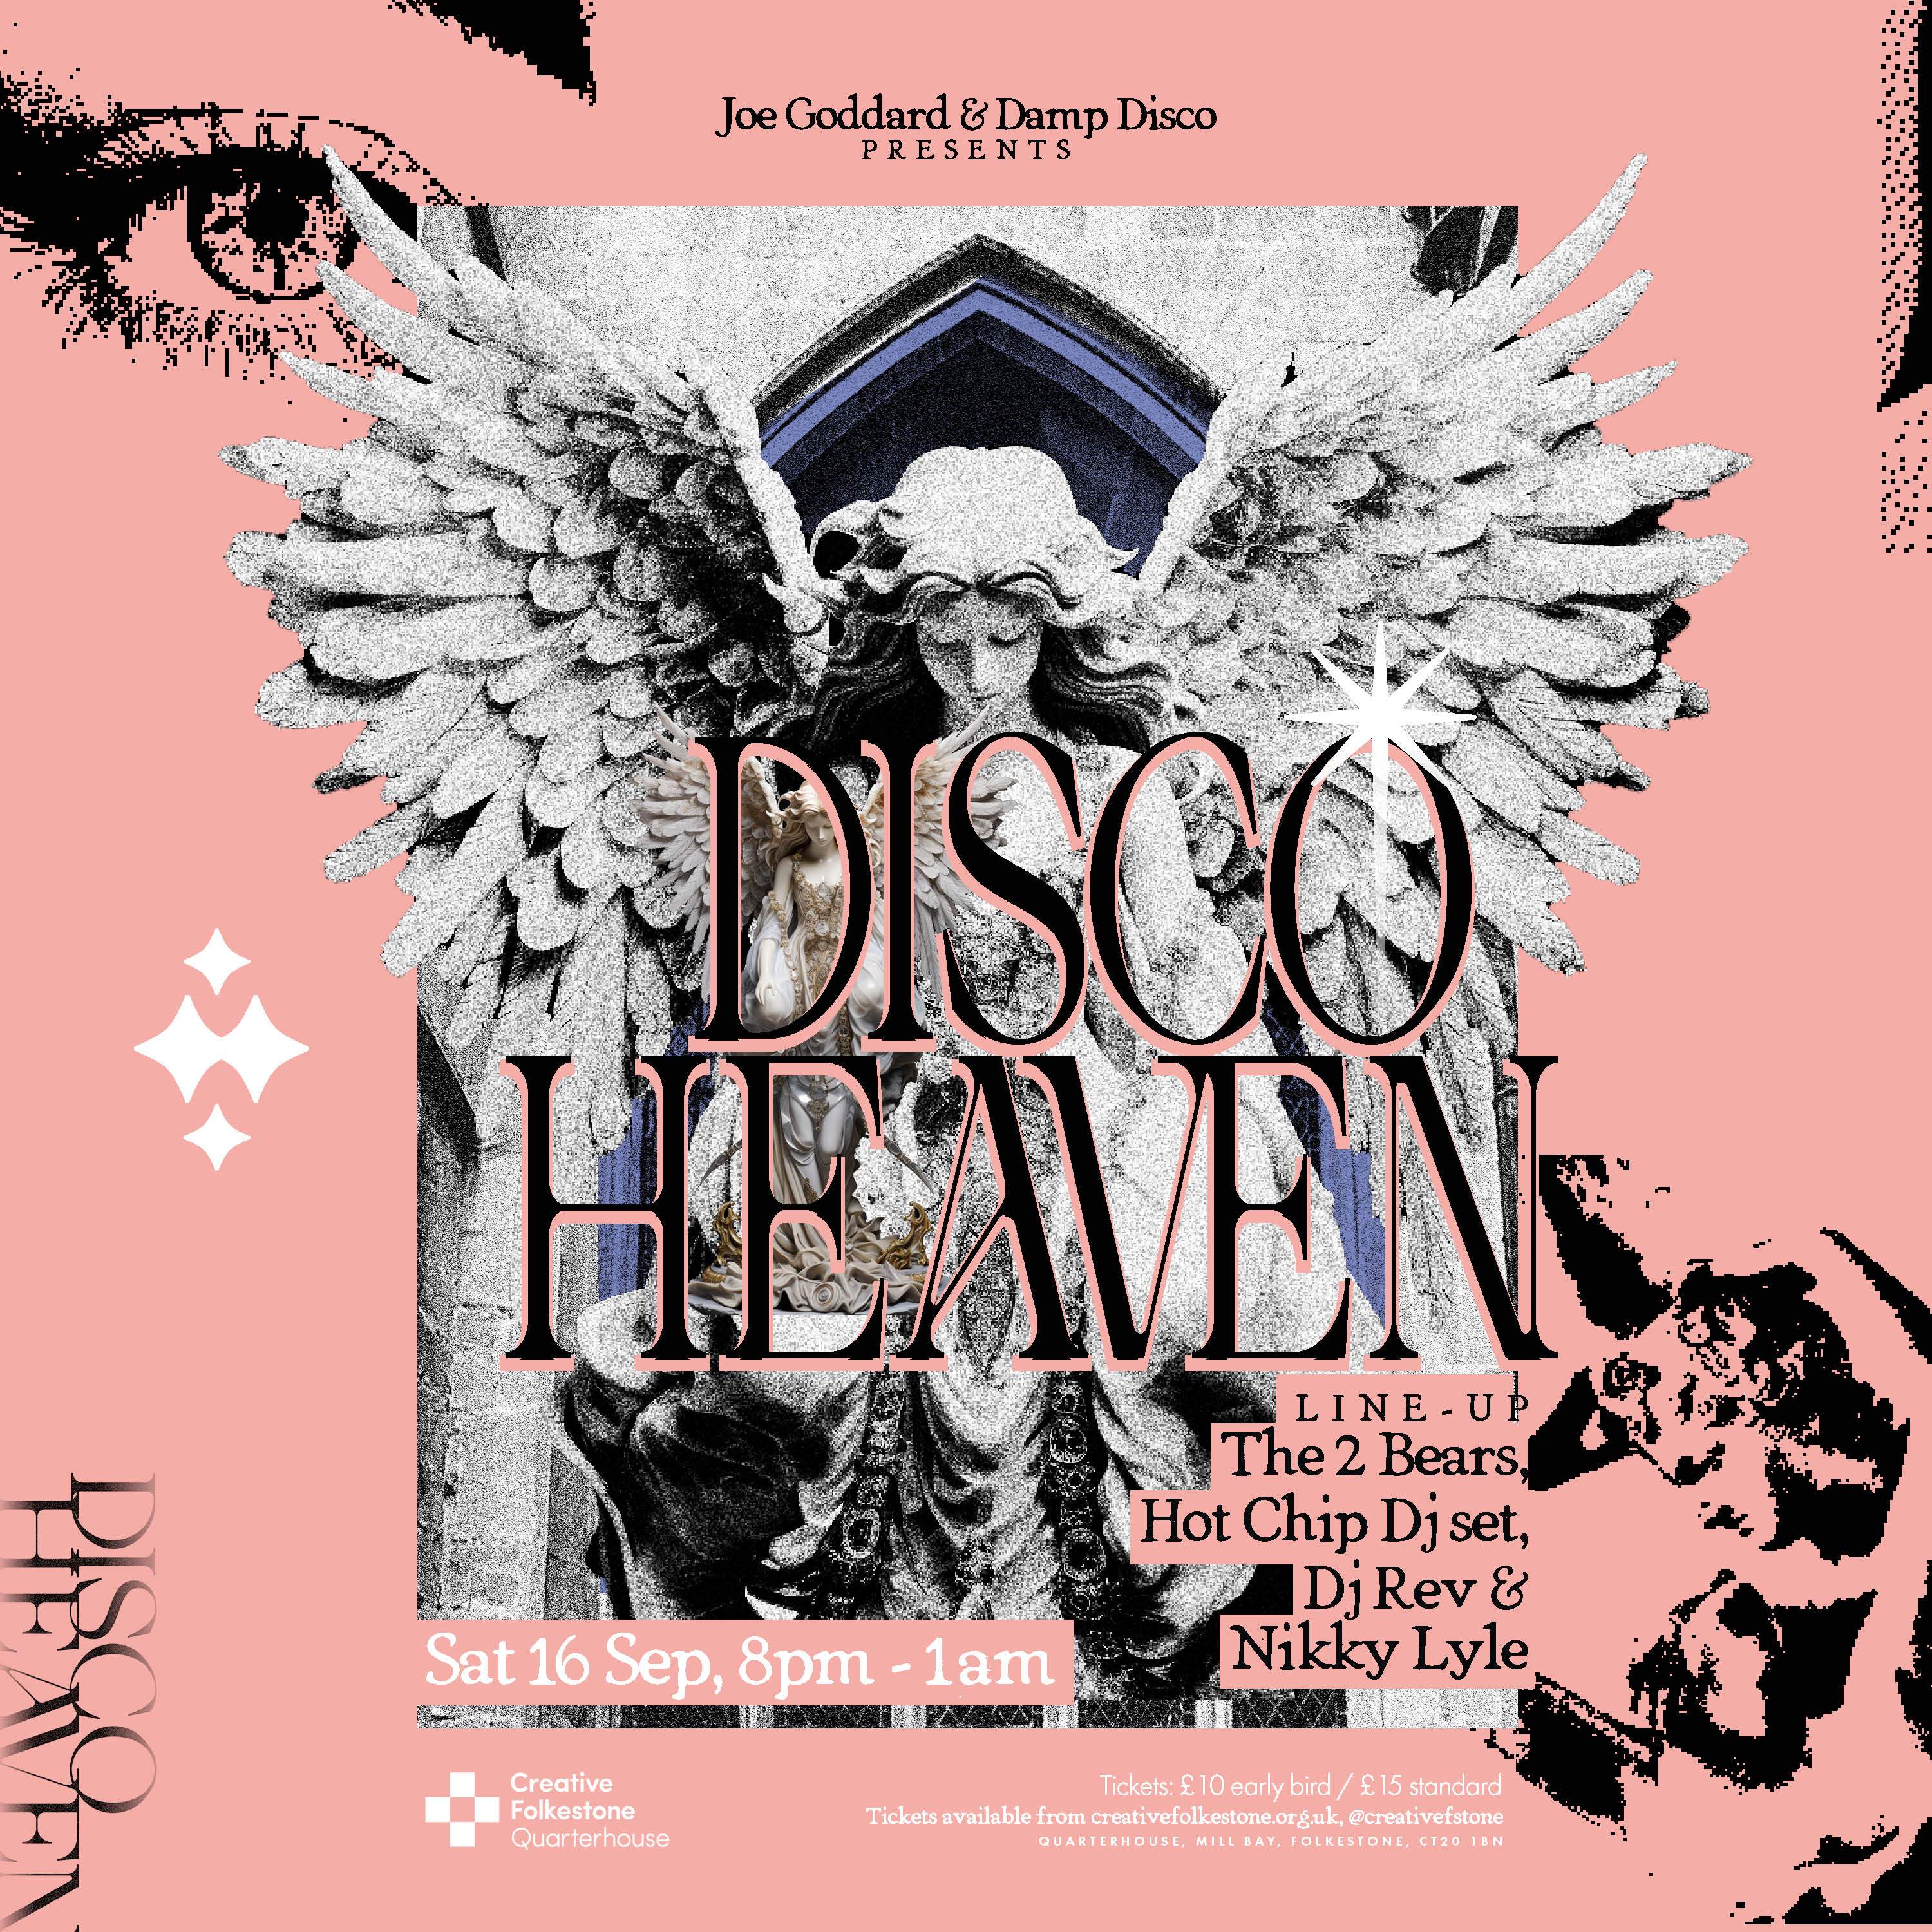 Joe Goddard & Damp Disco: Disco Heaven - フライヤー表